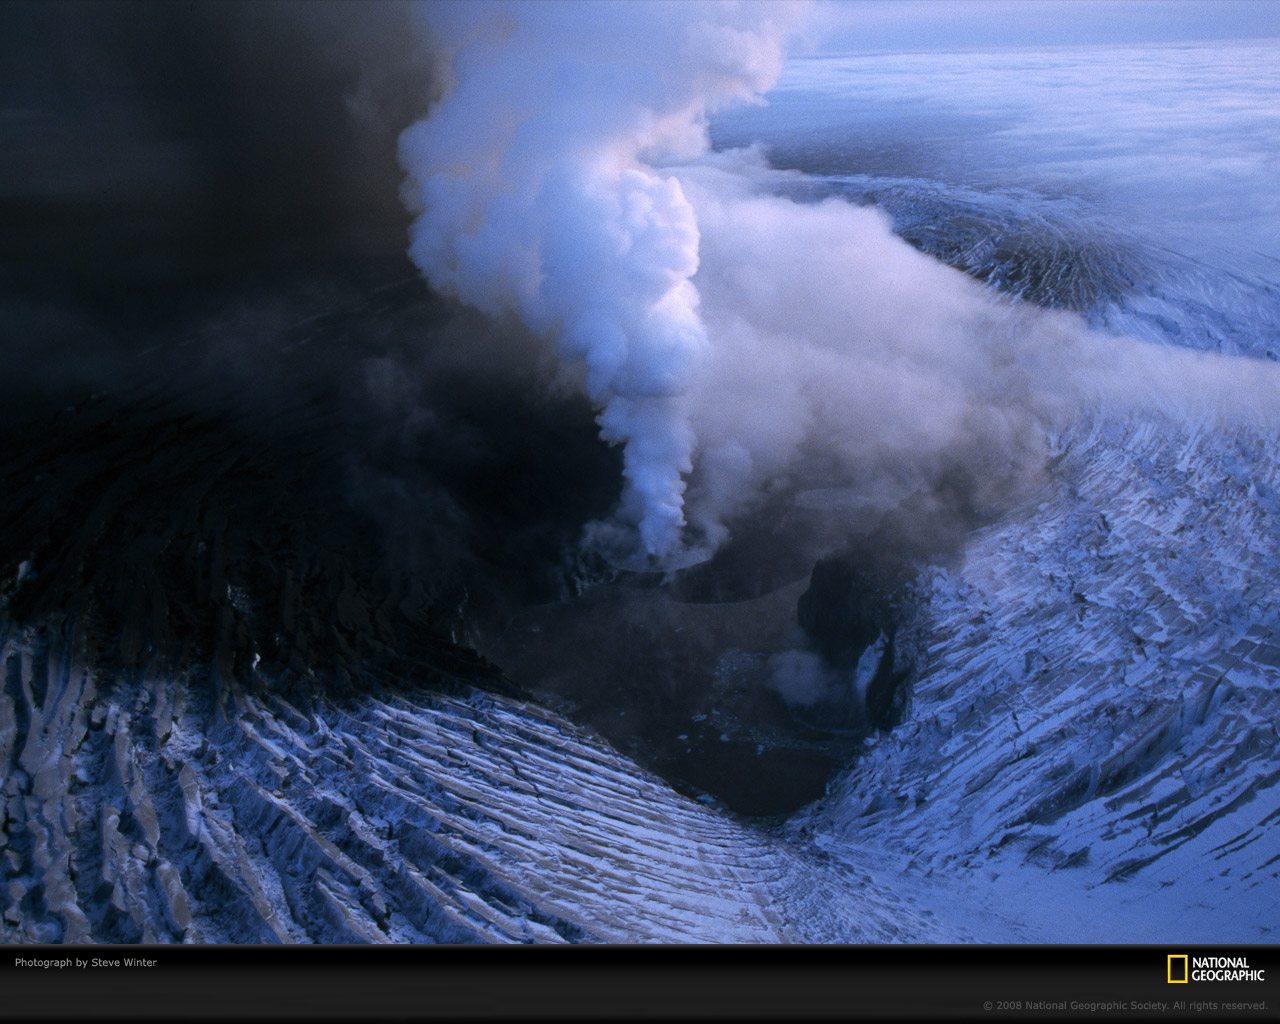 壁纸1280x1024透过镜头  Volcanic Chasm Vatnaj kull Glacier Iceland 瓦特纳尤库尔冰川火山坑桌面壁纸壁纸 国家地理杂志2008年度最佳图片壁纸 国家地理杂志2008年度最佳图片图片 国家地理杂志2008年度最佳图片素材 人文壁纸 人文图库 人文图片素材桌面壁纸